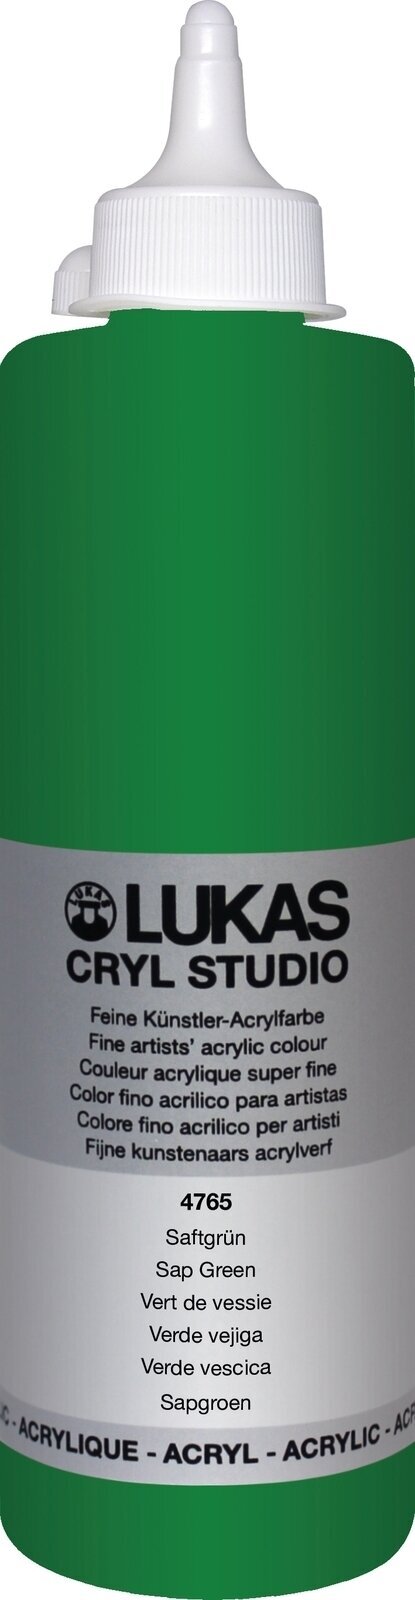 Tinta acrílica Lukas Cryl Studio Acrylic Paint Plastic Bottle Tinta acrílica Sap Green 500 ml 1 un.